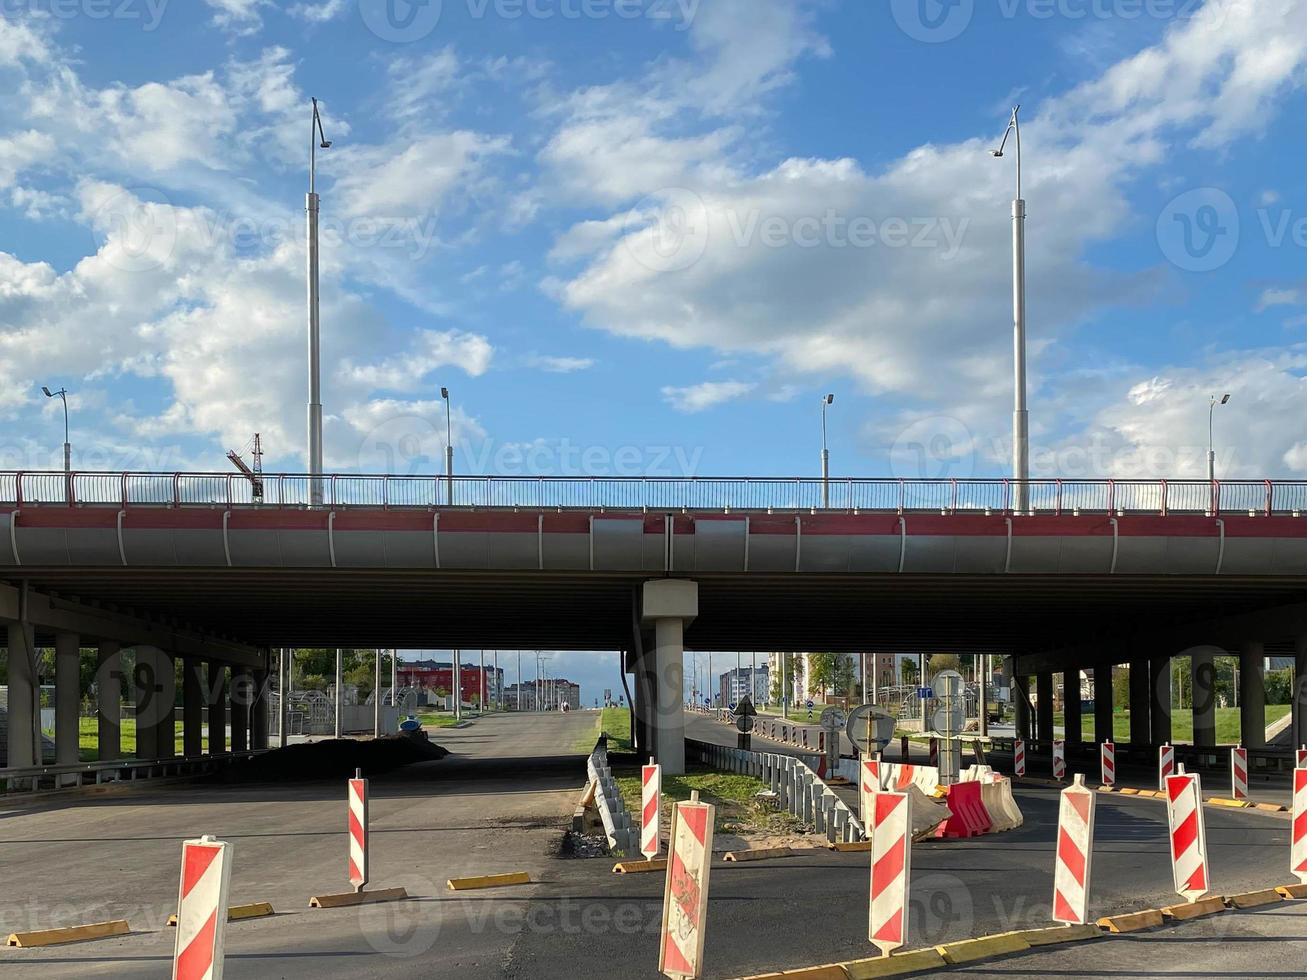 reparatur und bau einer straße mit provisorischen verkehrszeichen und kegeln auf dem hintergrund einer großen autobahnbrücke in einer großstadt foto